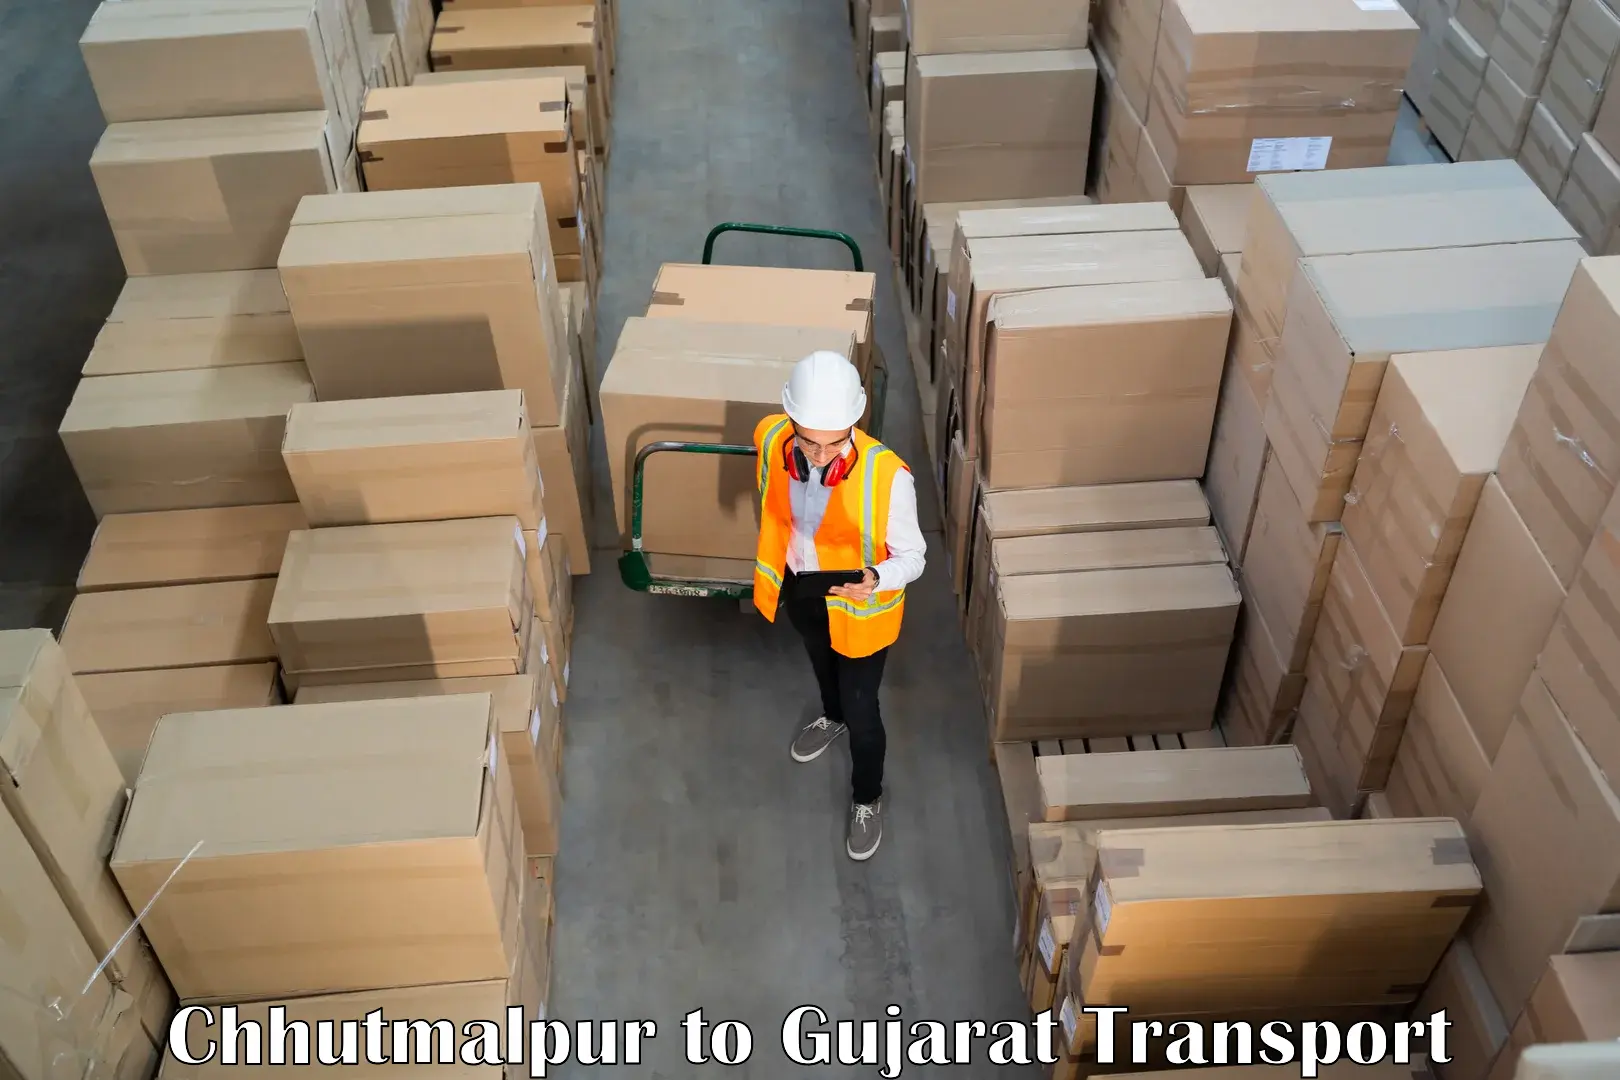 Bike shipping service Chhutmalpur to Tarapur